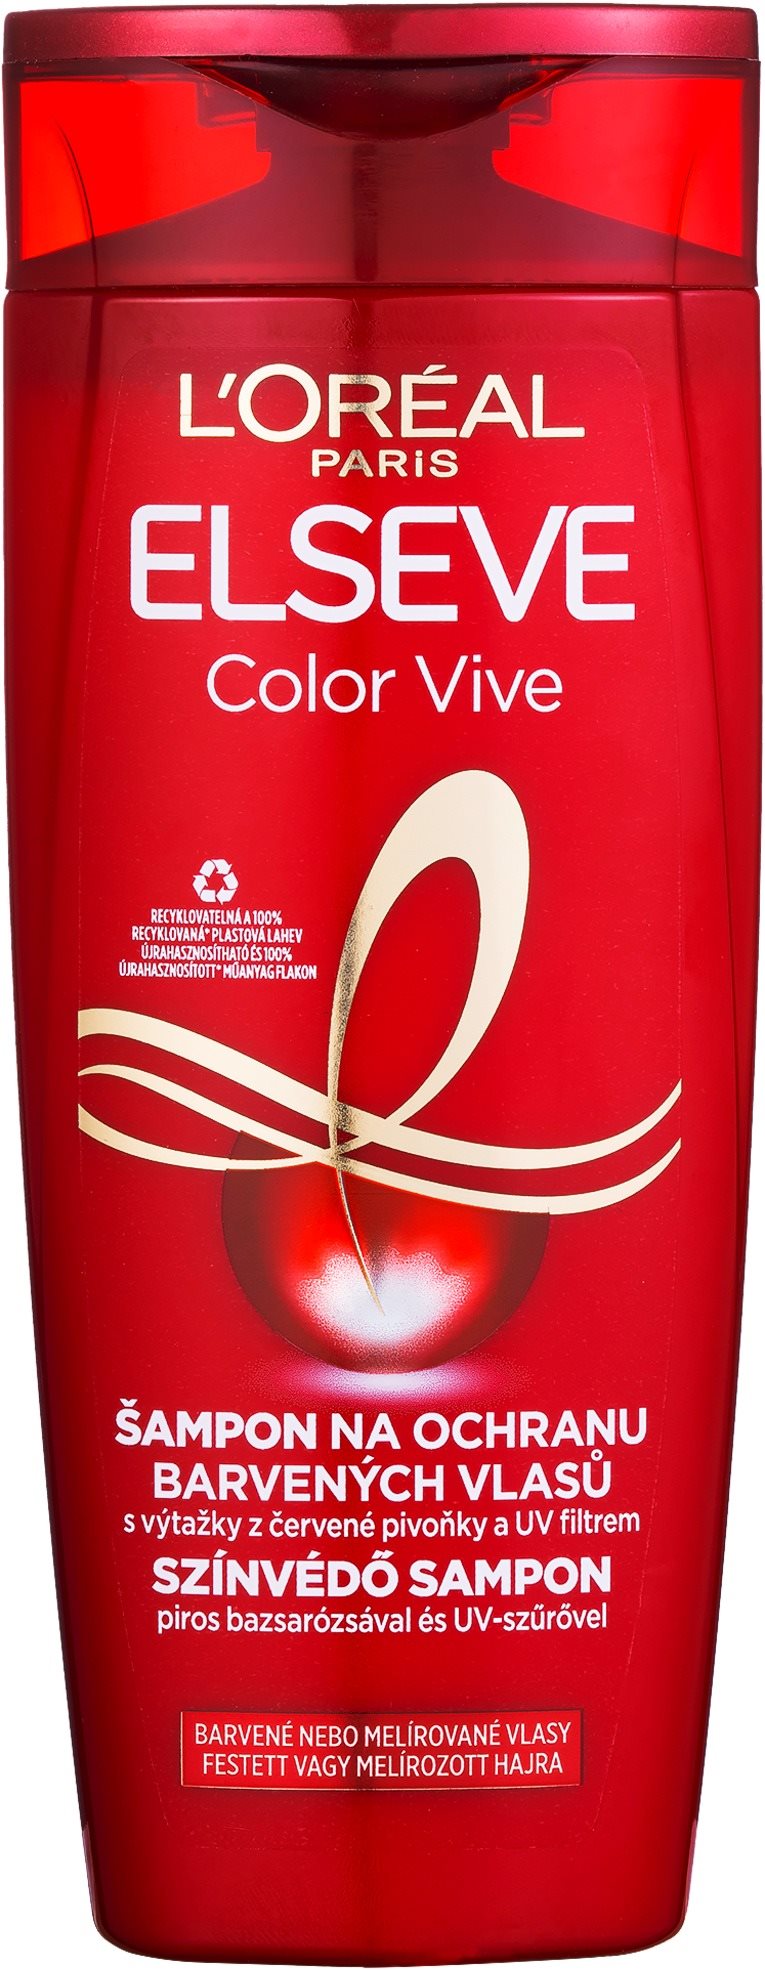 ĽORÉAL PARIS Elseve Color-Vive Sampon 250 ml